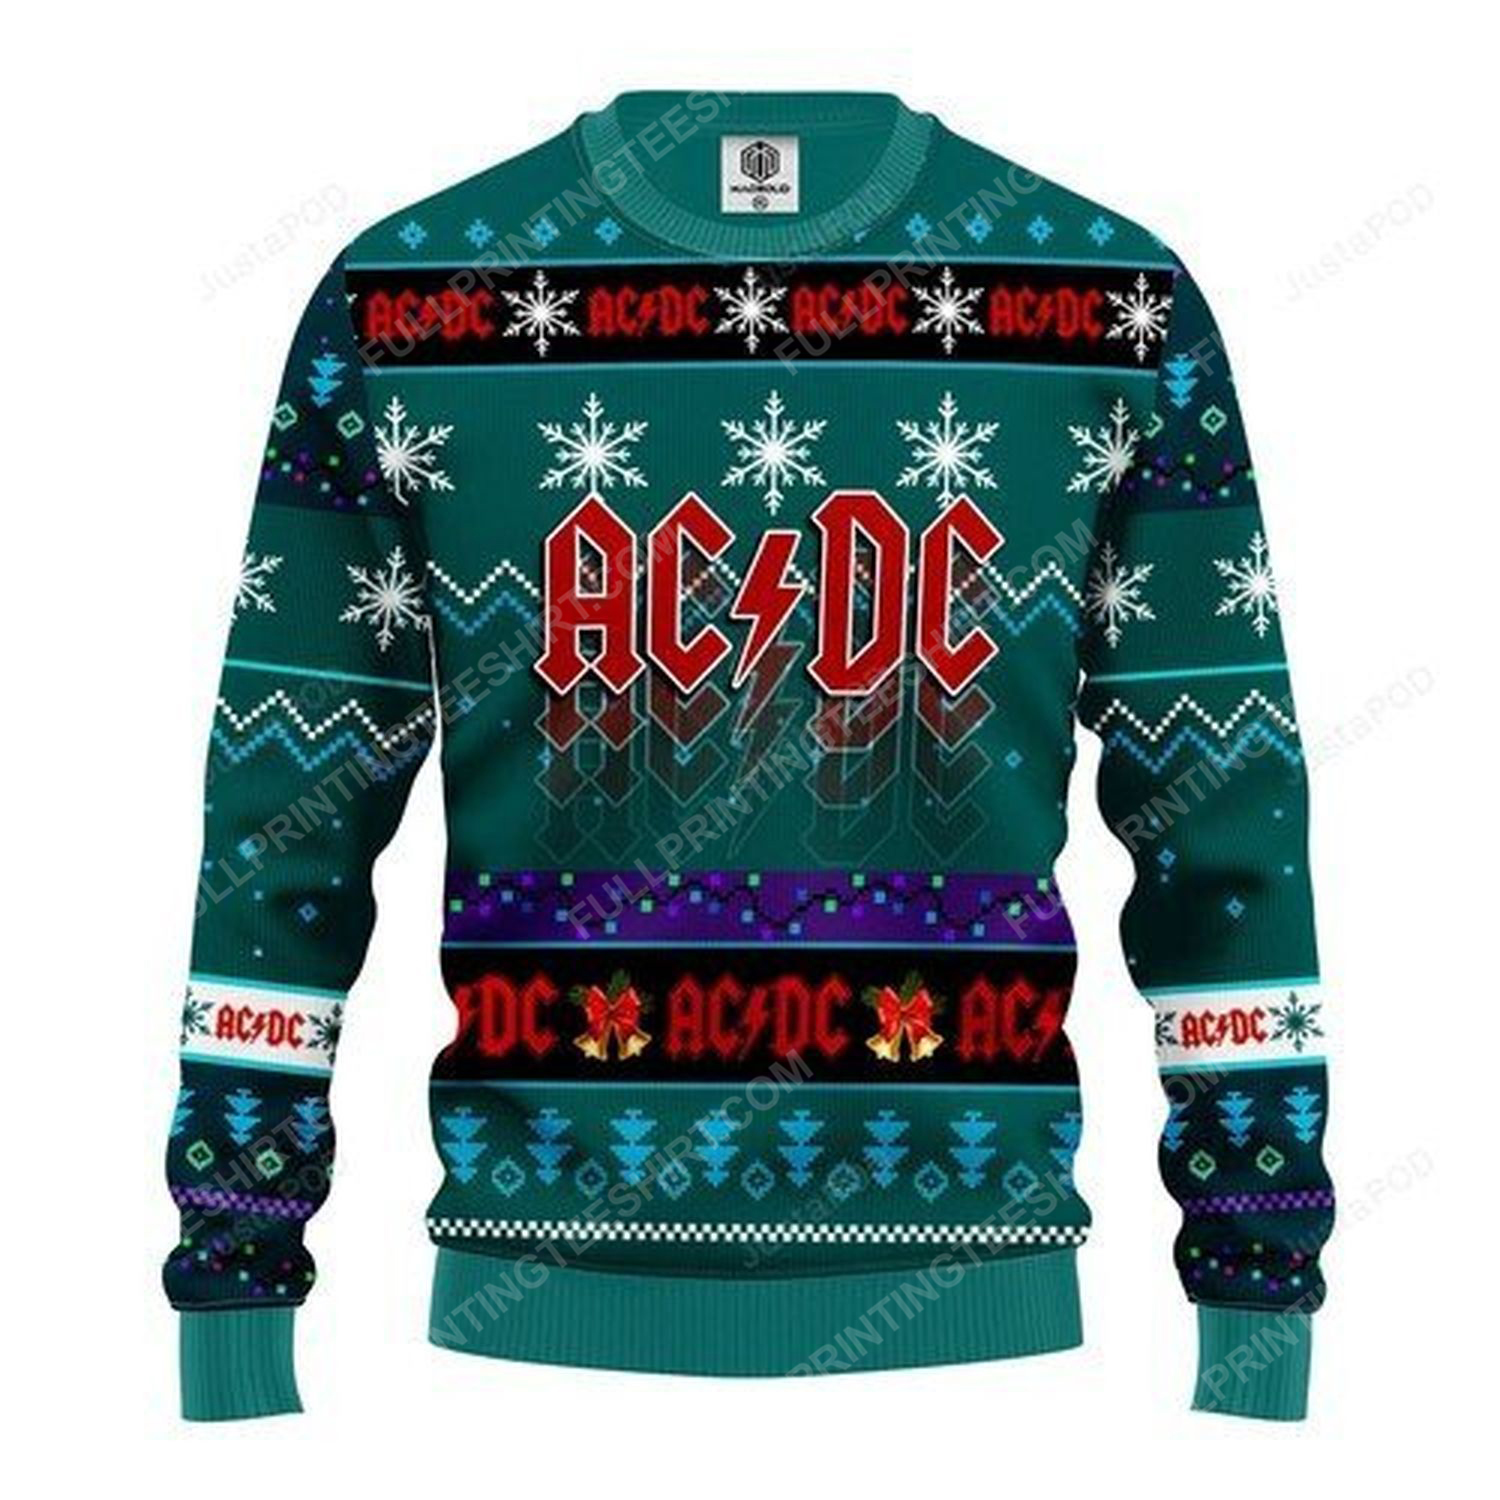 Ac Dc rock band christmas gift ugly christmas sweater